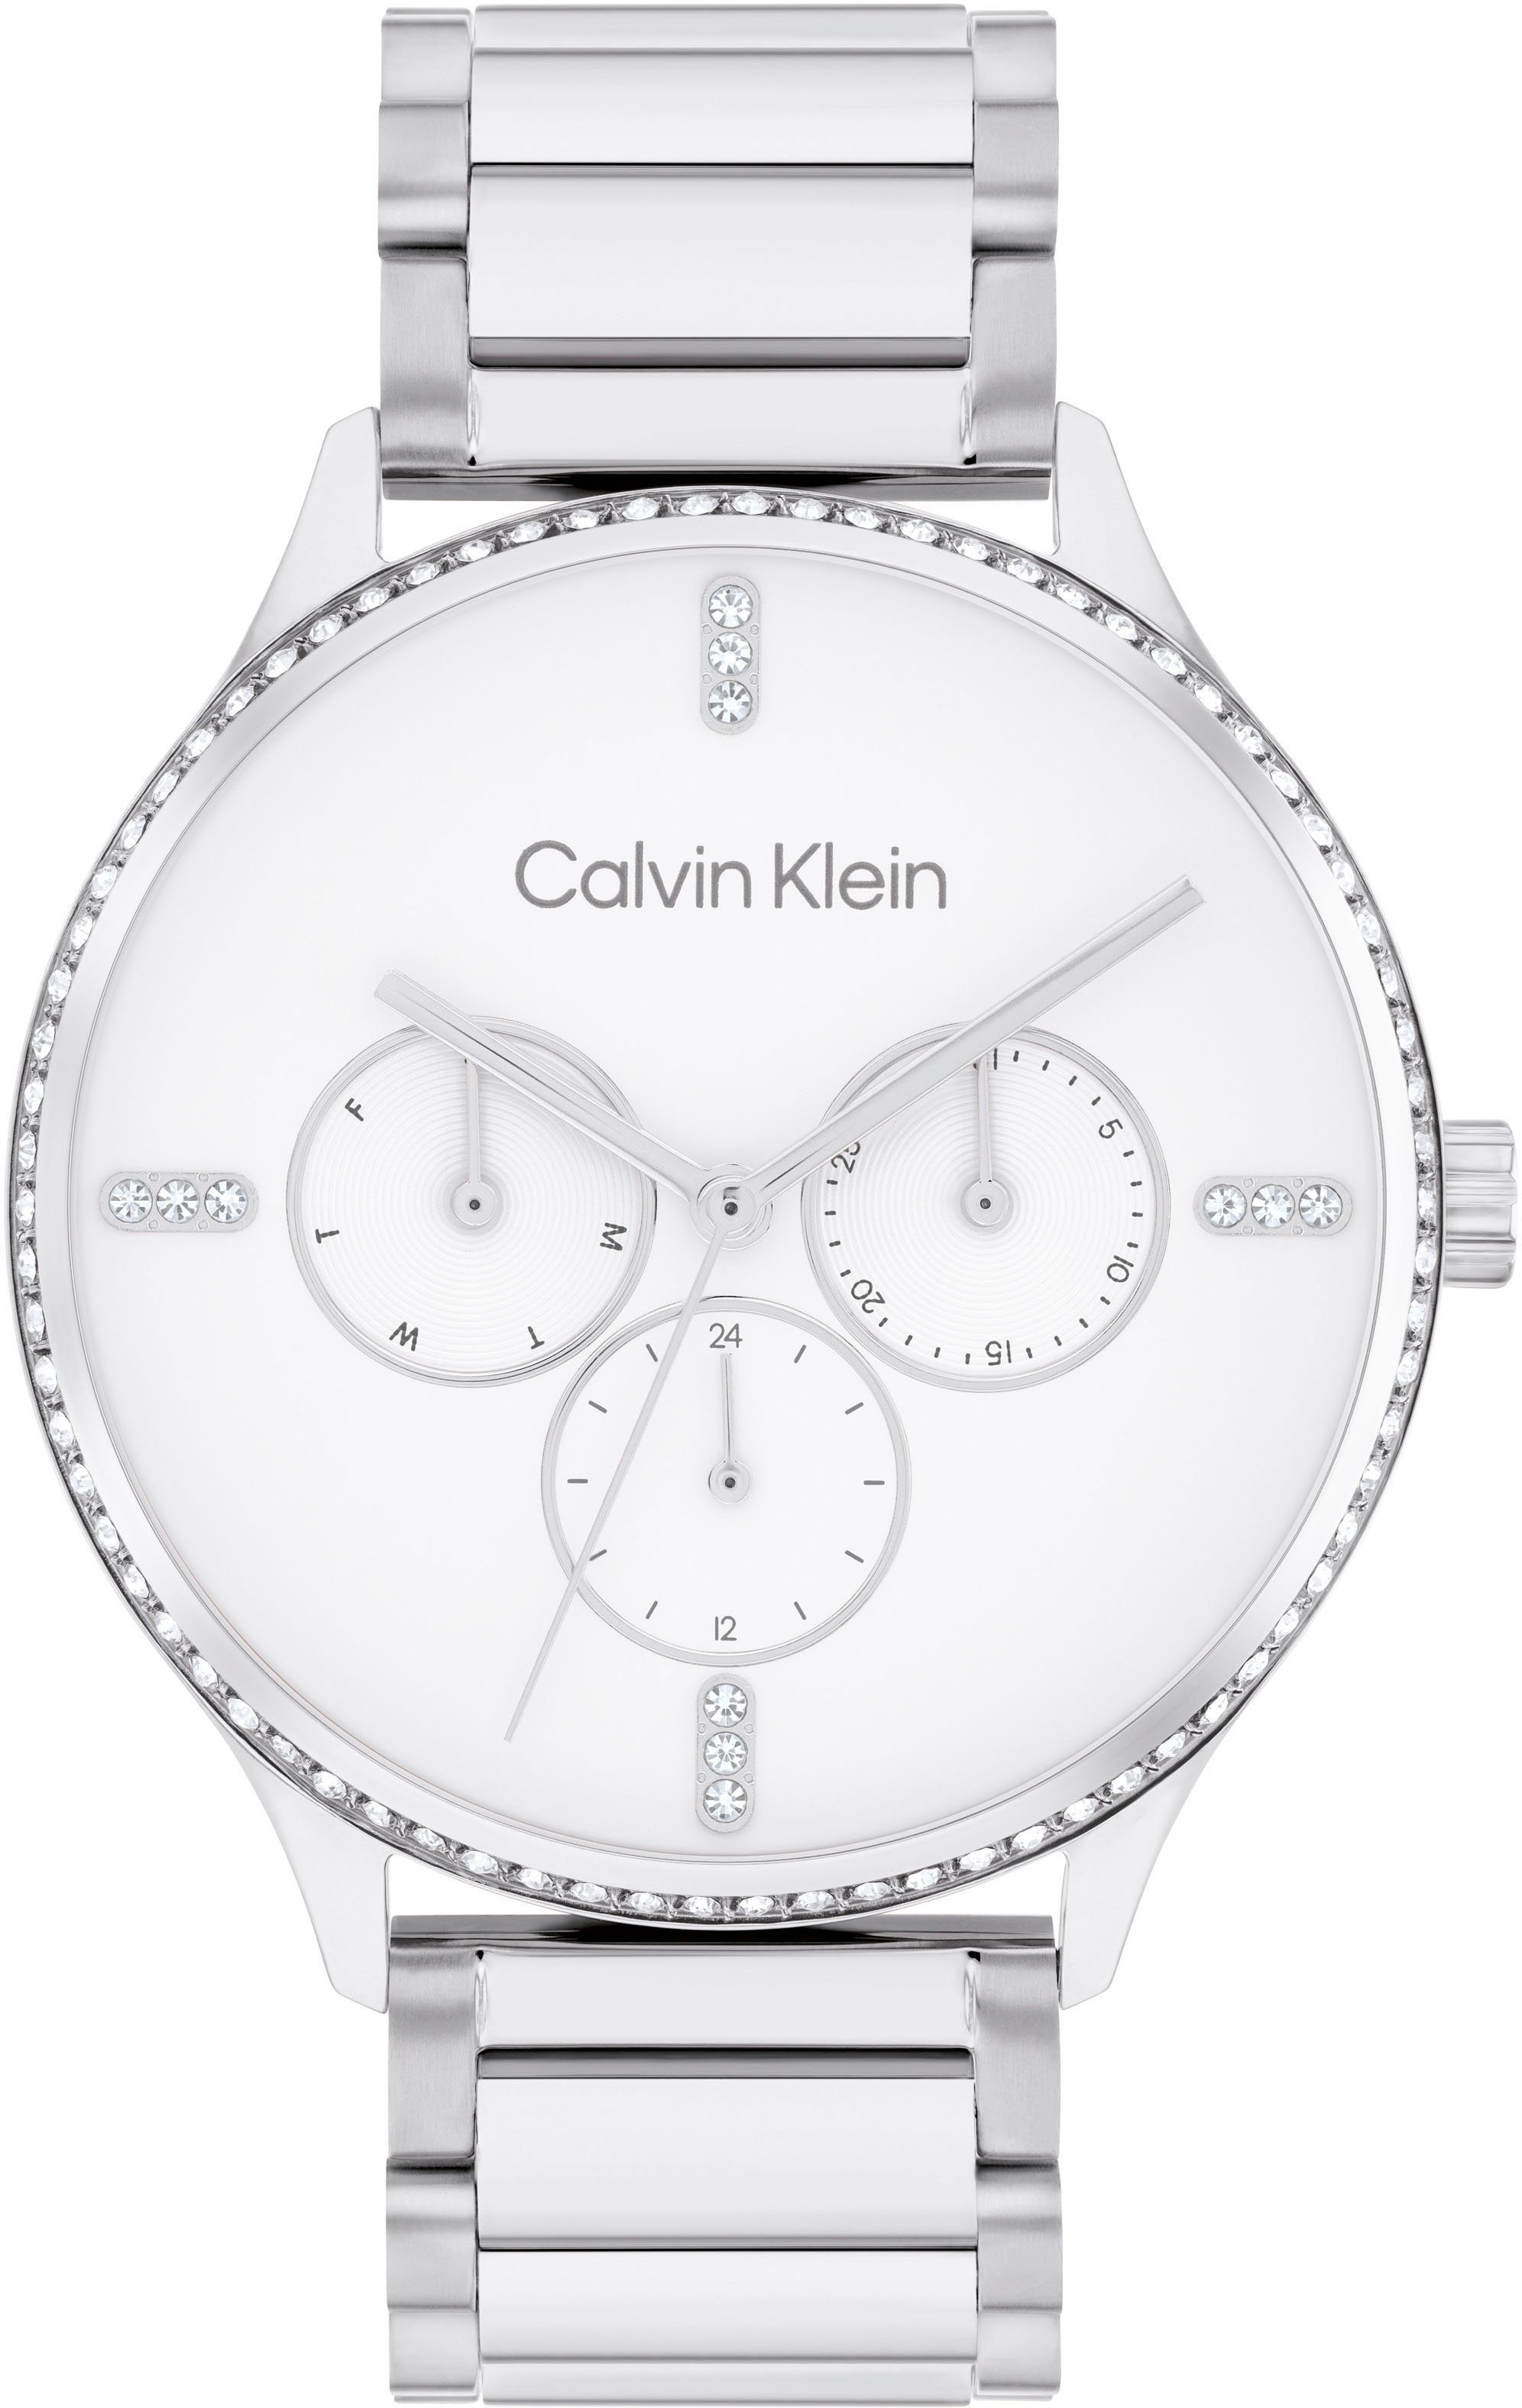 Calvin Klein Multifunktionsuhr 25200373, Quarzuhr, Armbanduhr, Damen, Datum, Glaskristalle, 12/24-Std.-Anzeige